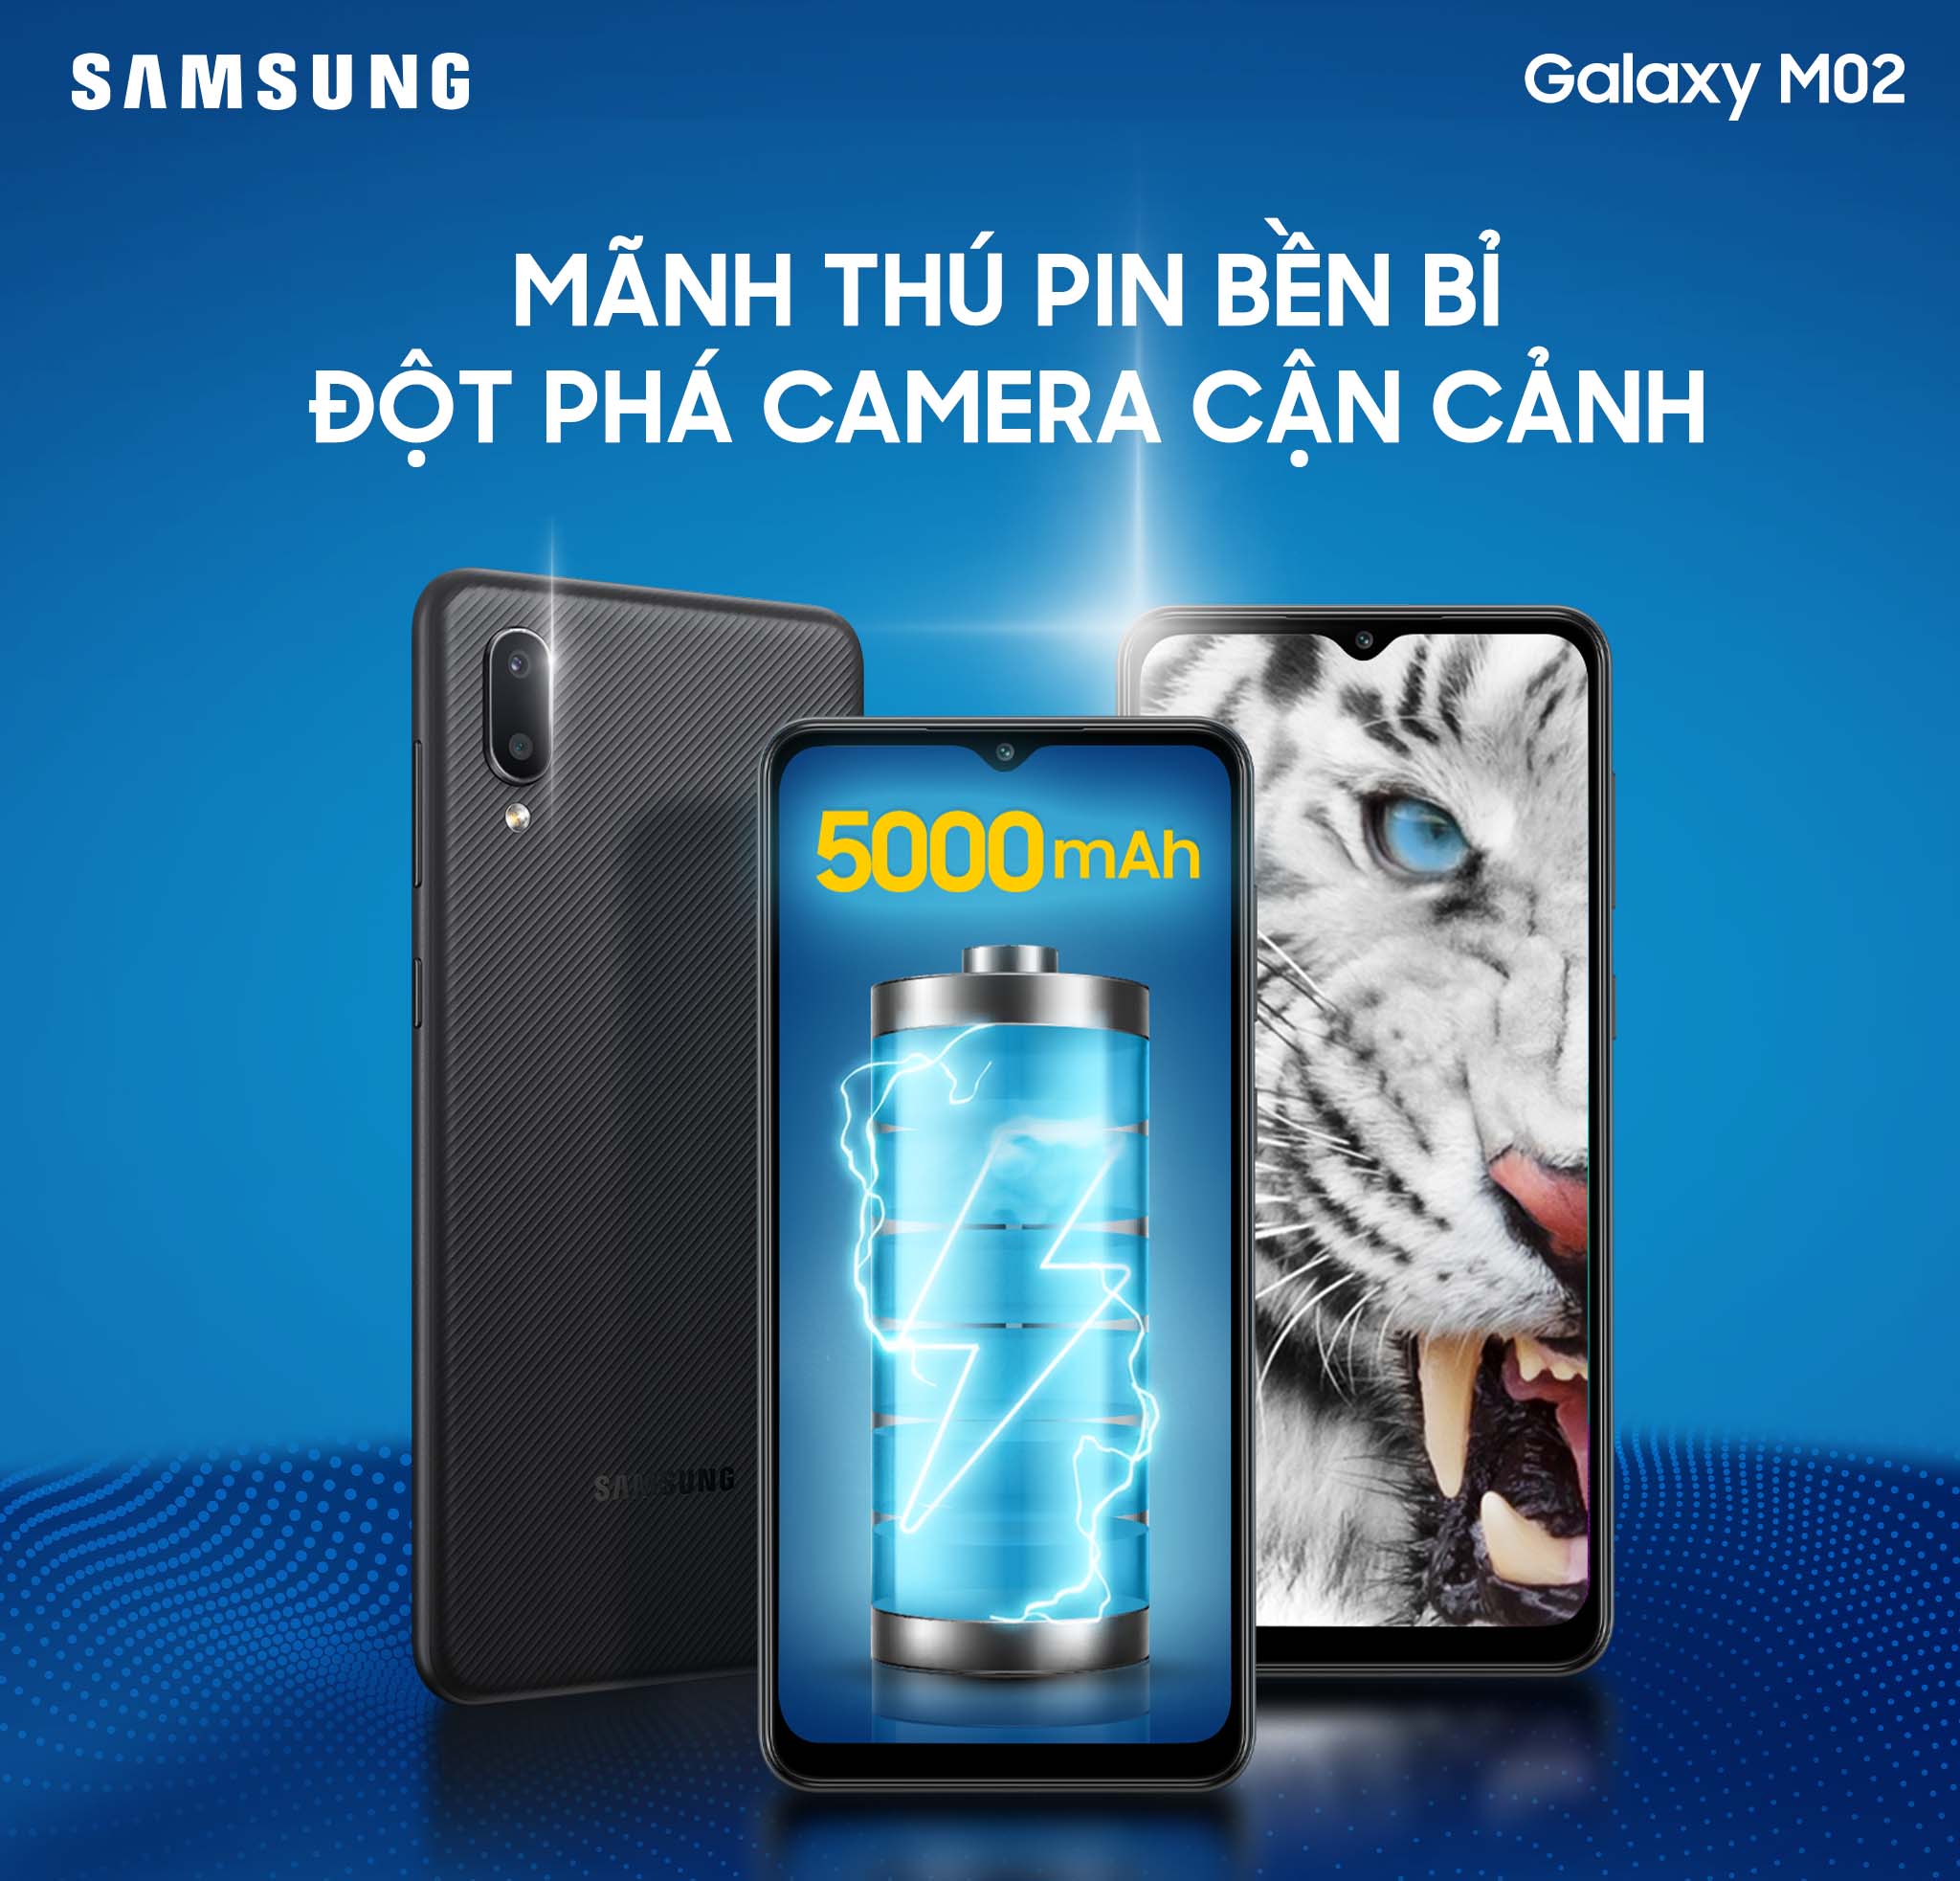 Samsung ra mắt Galaxy M02: pin 5000mAh, camera macro, giá dưới 2,5 triệu đồng